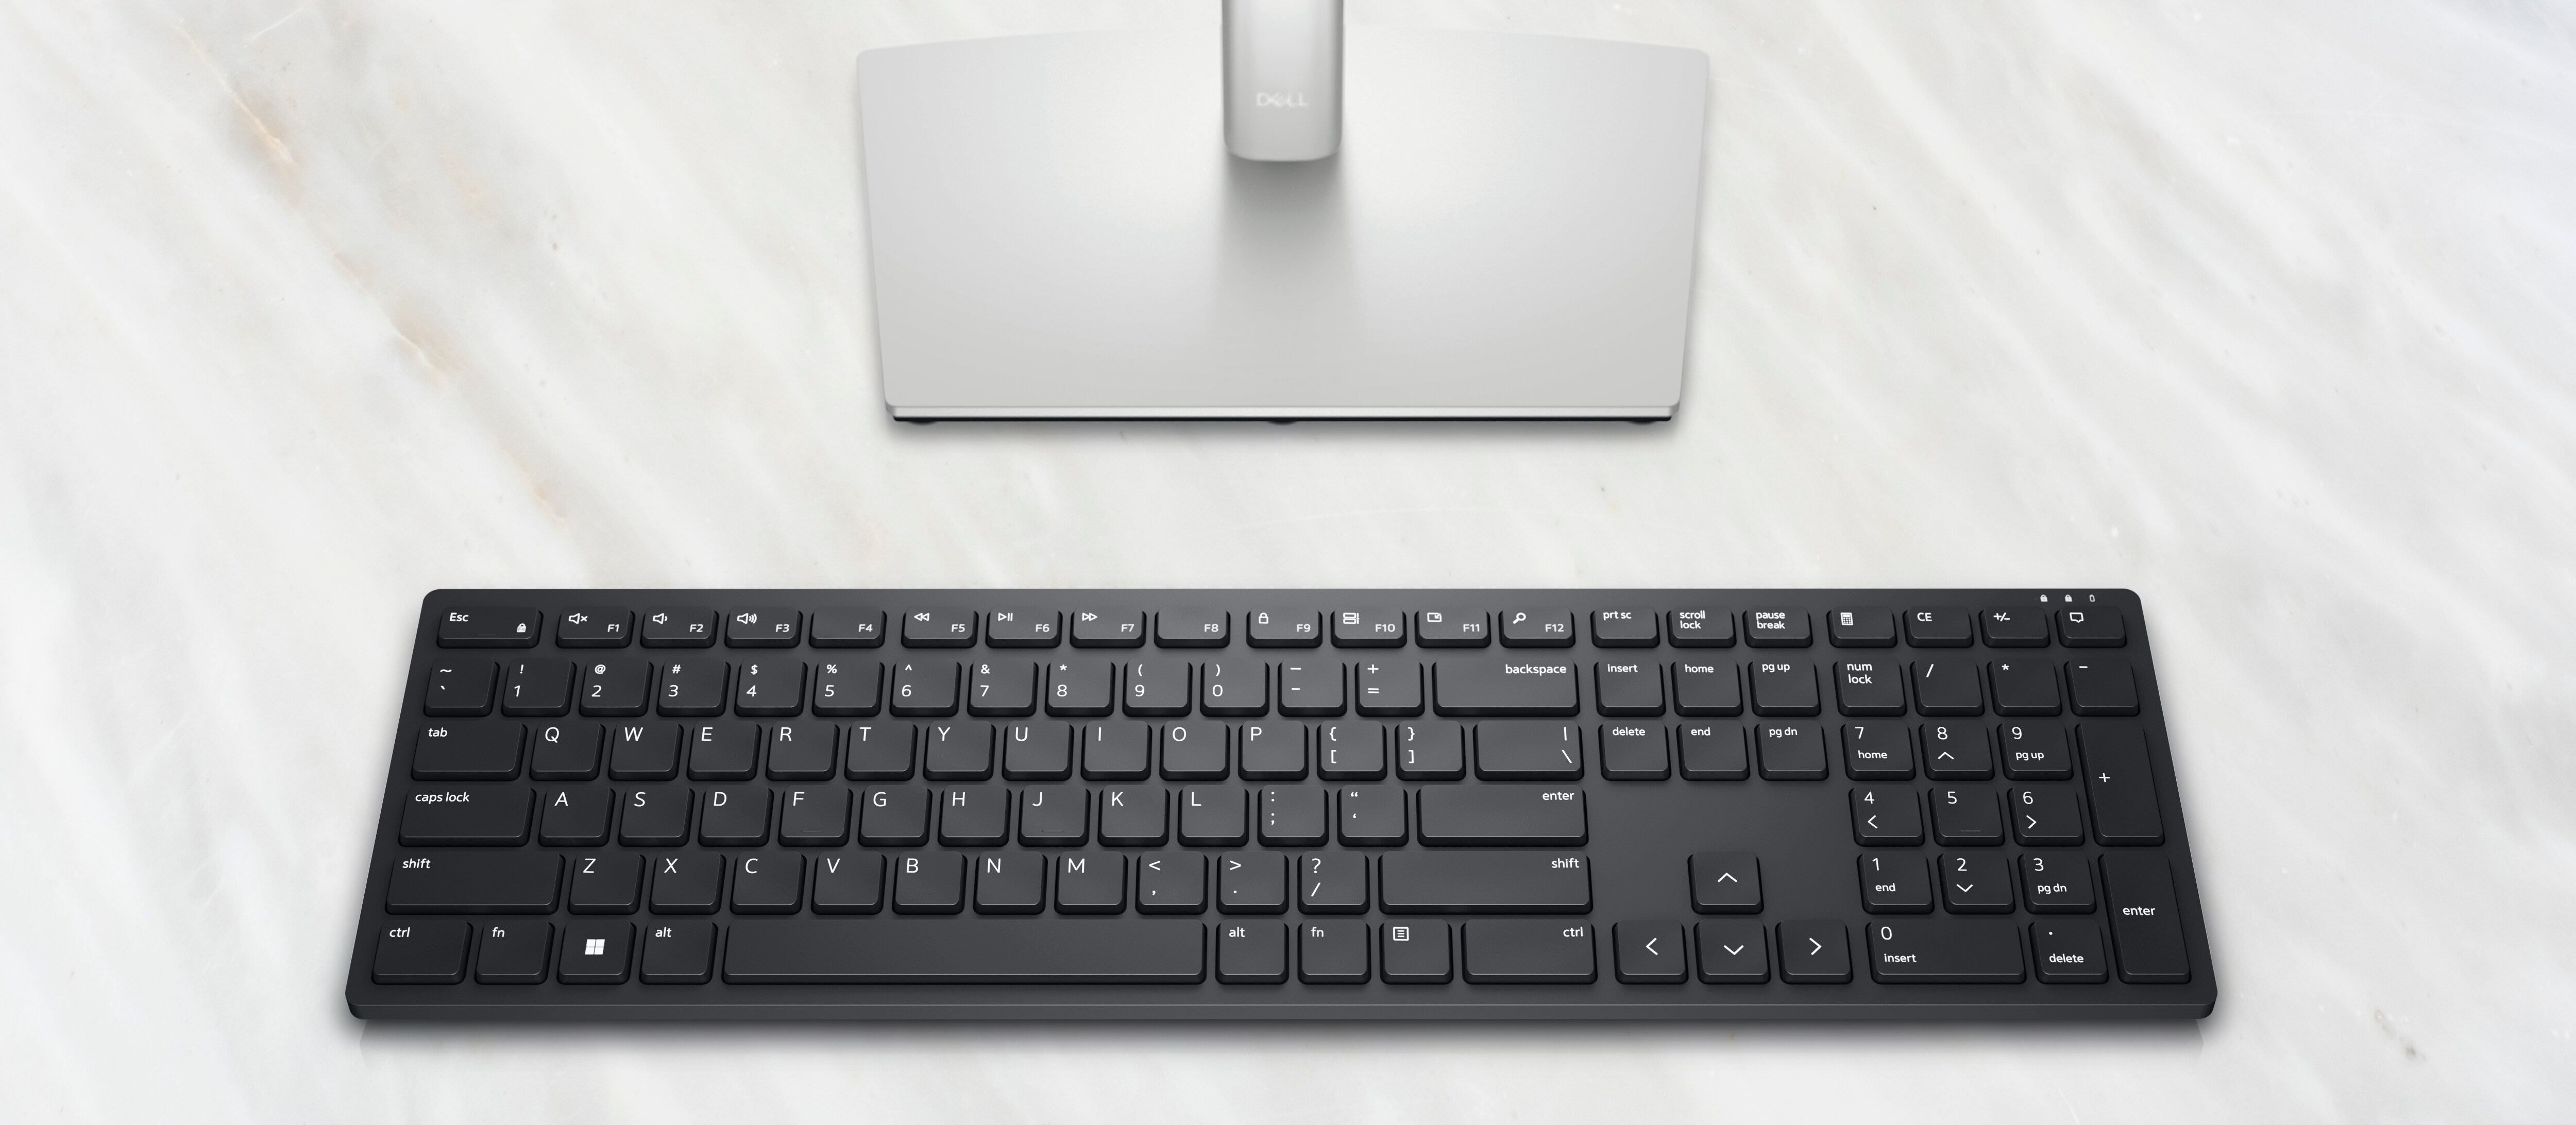 Dell Wireless Keyboard - KB500